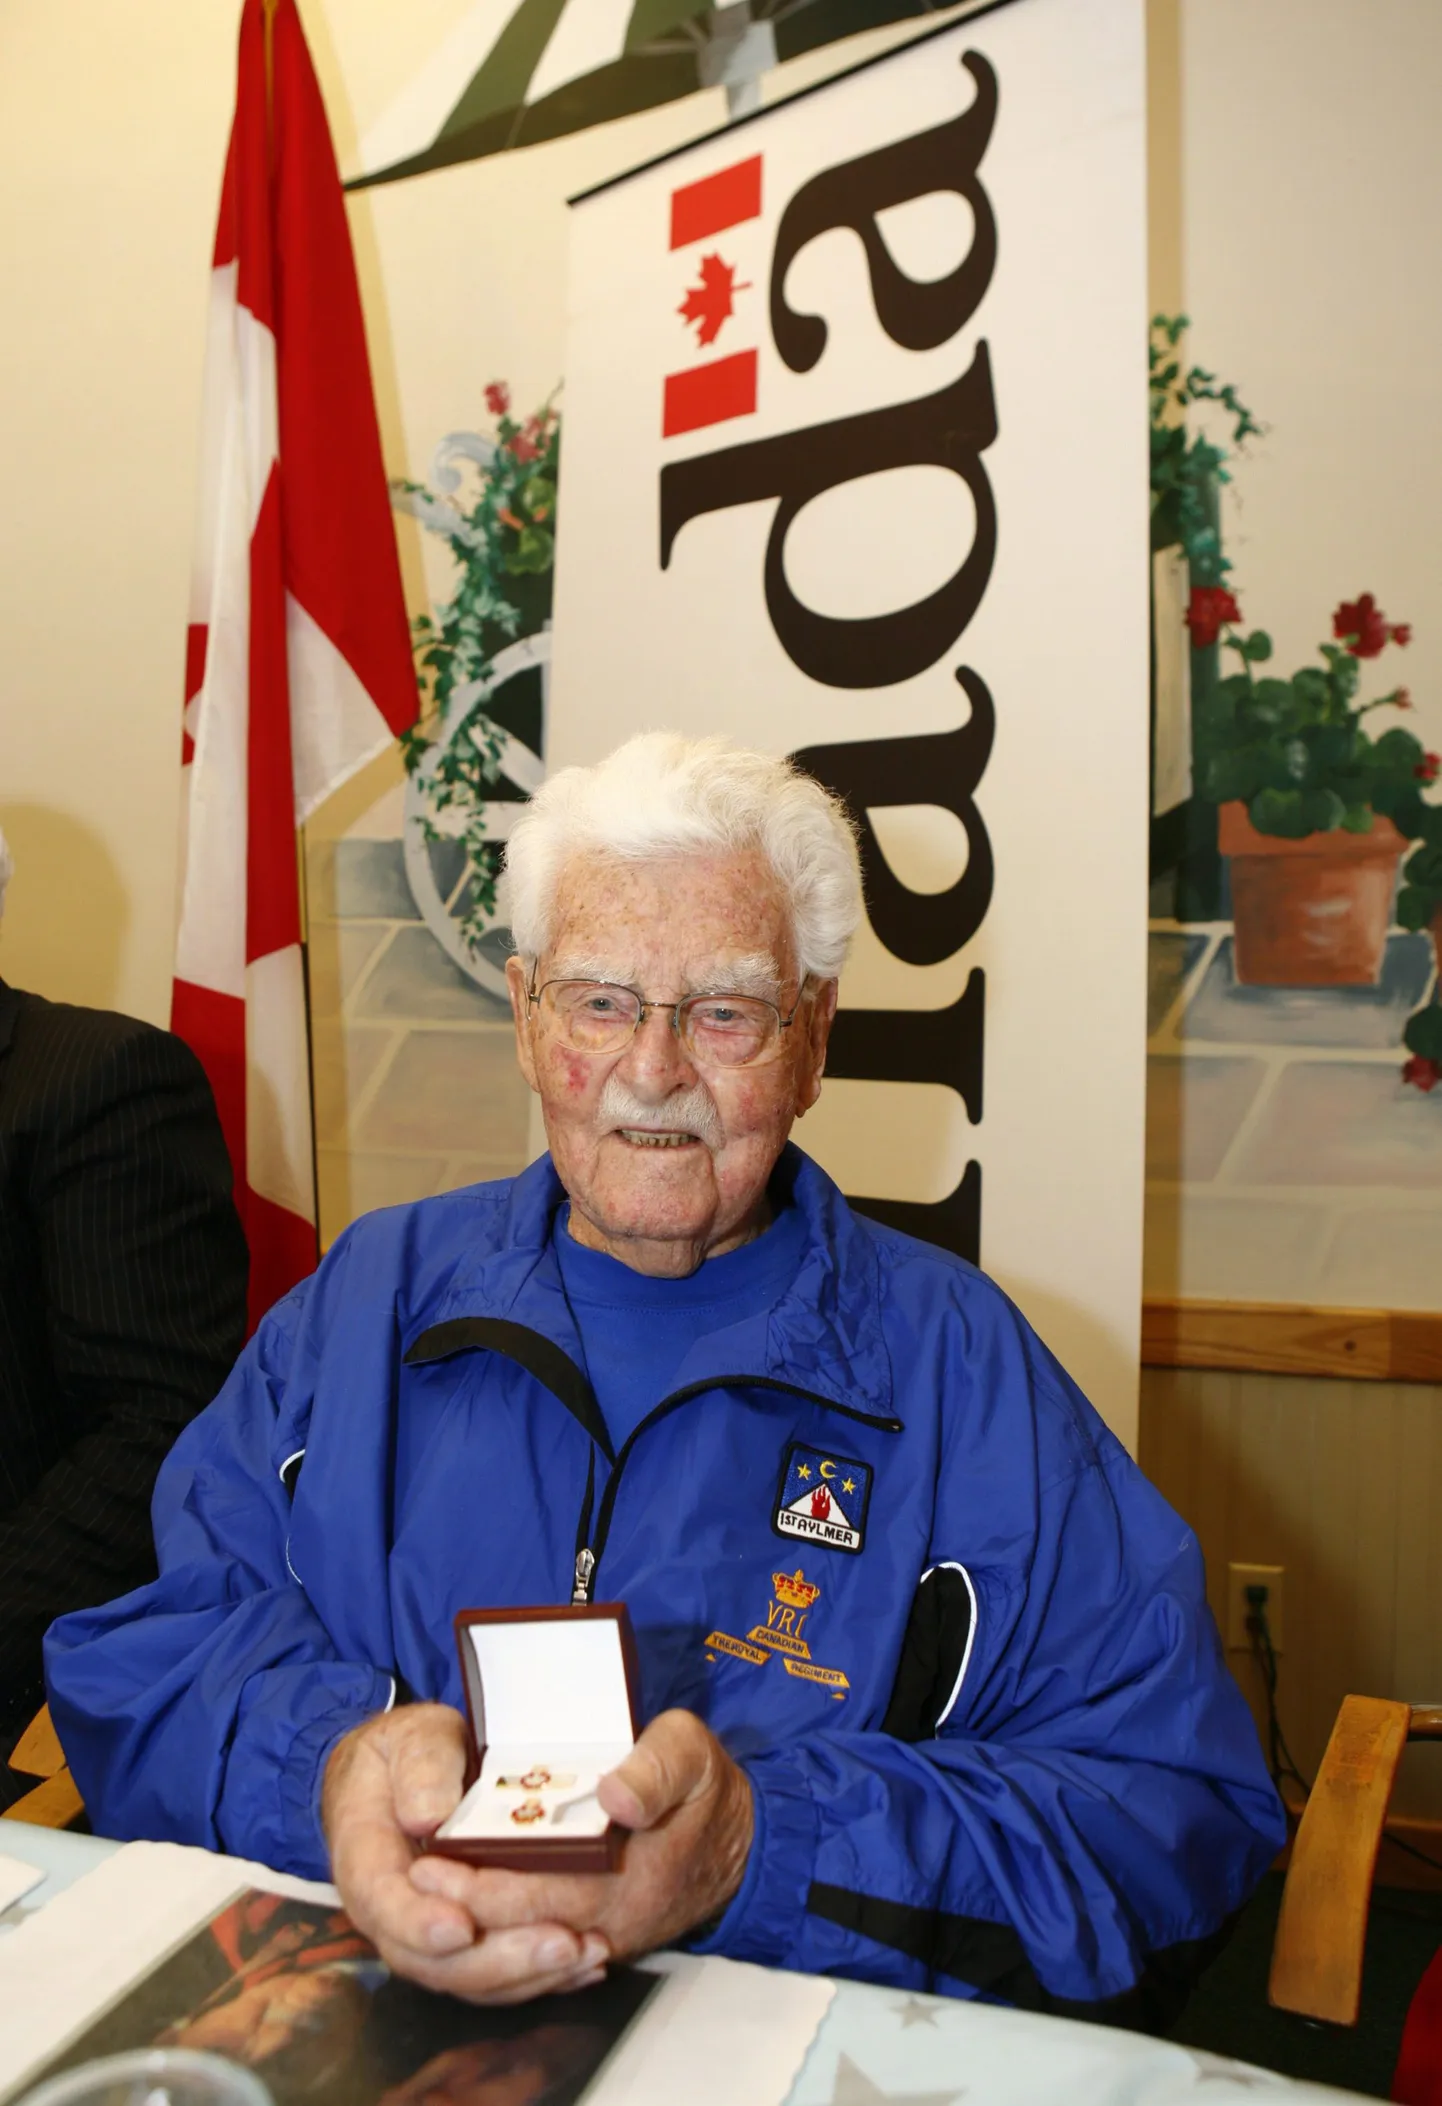 Esimese maailmasõja veteran, kanadalane John Babcock vähem kui kaks aastat enne oma surma.